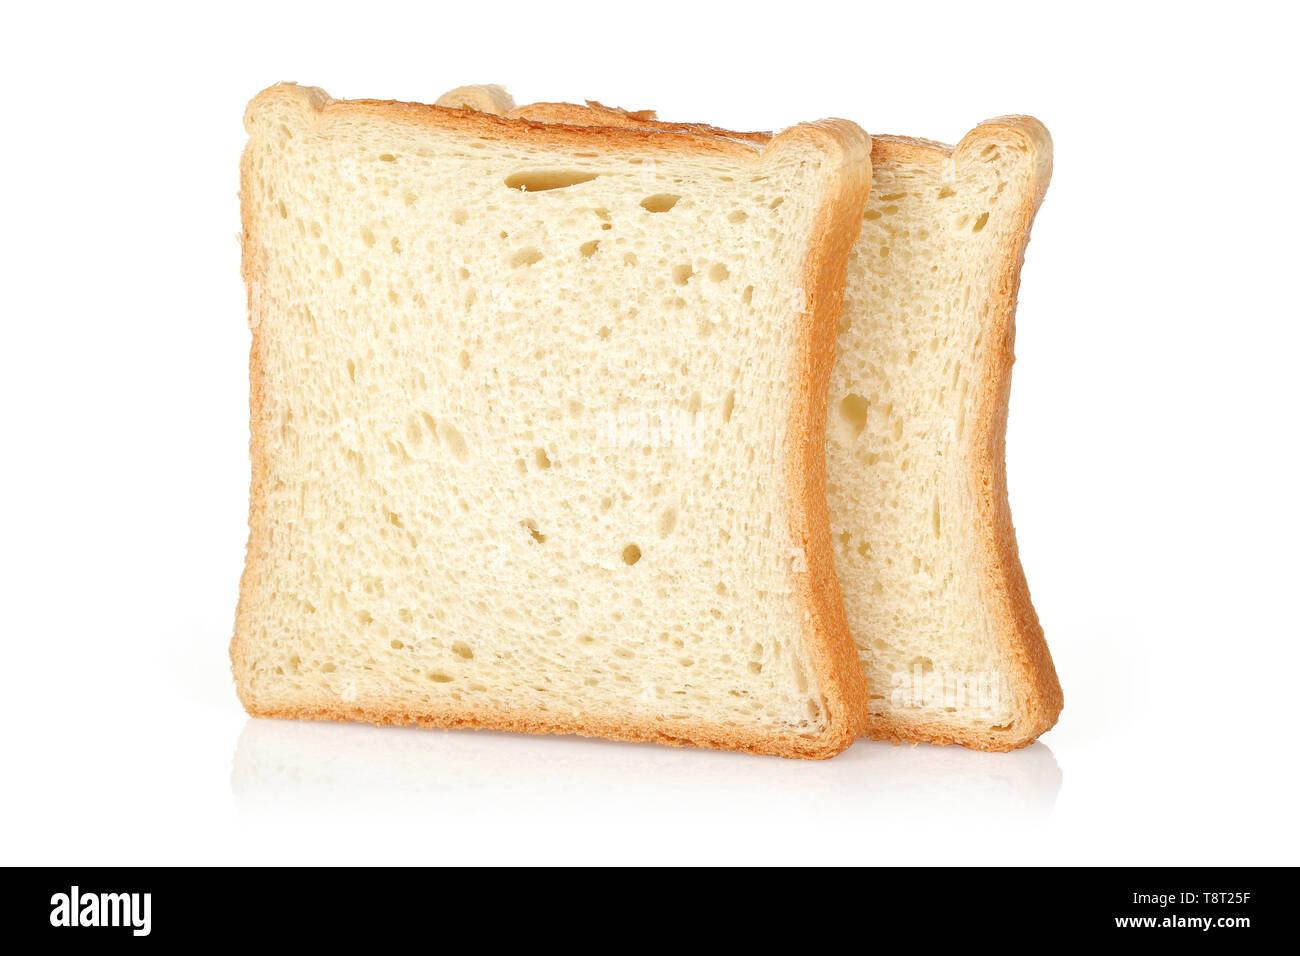 Кусок тостового хлеба. Хлеб тостовый на белом фоне. Тостовый хлеб ломтик. Кусочек белого хлеба на белом фоне.